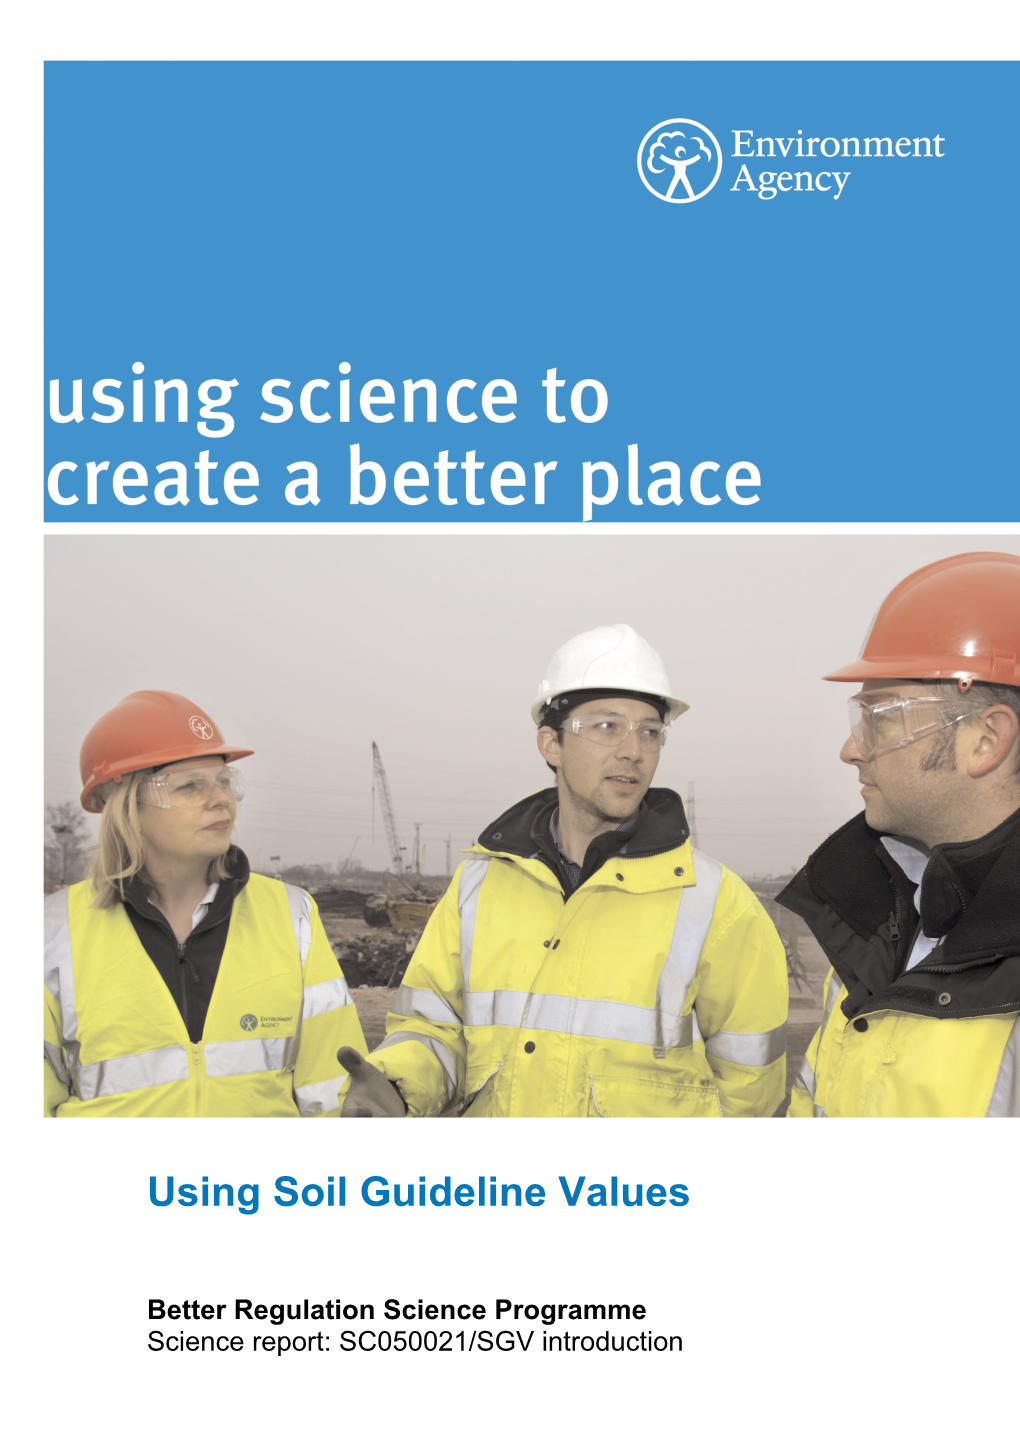 Using Soil Guideline Values